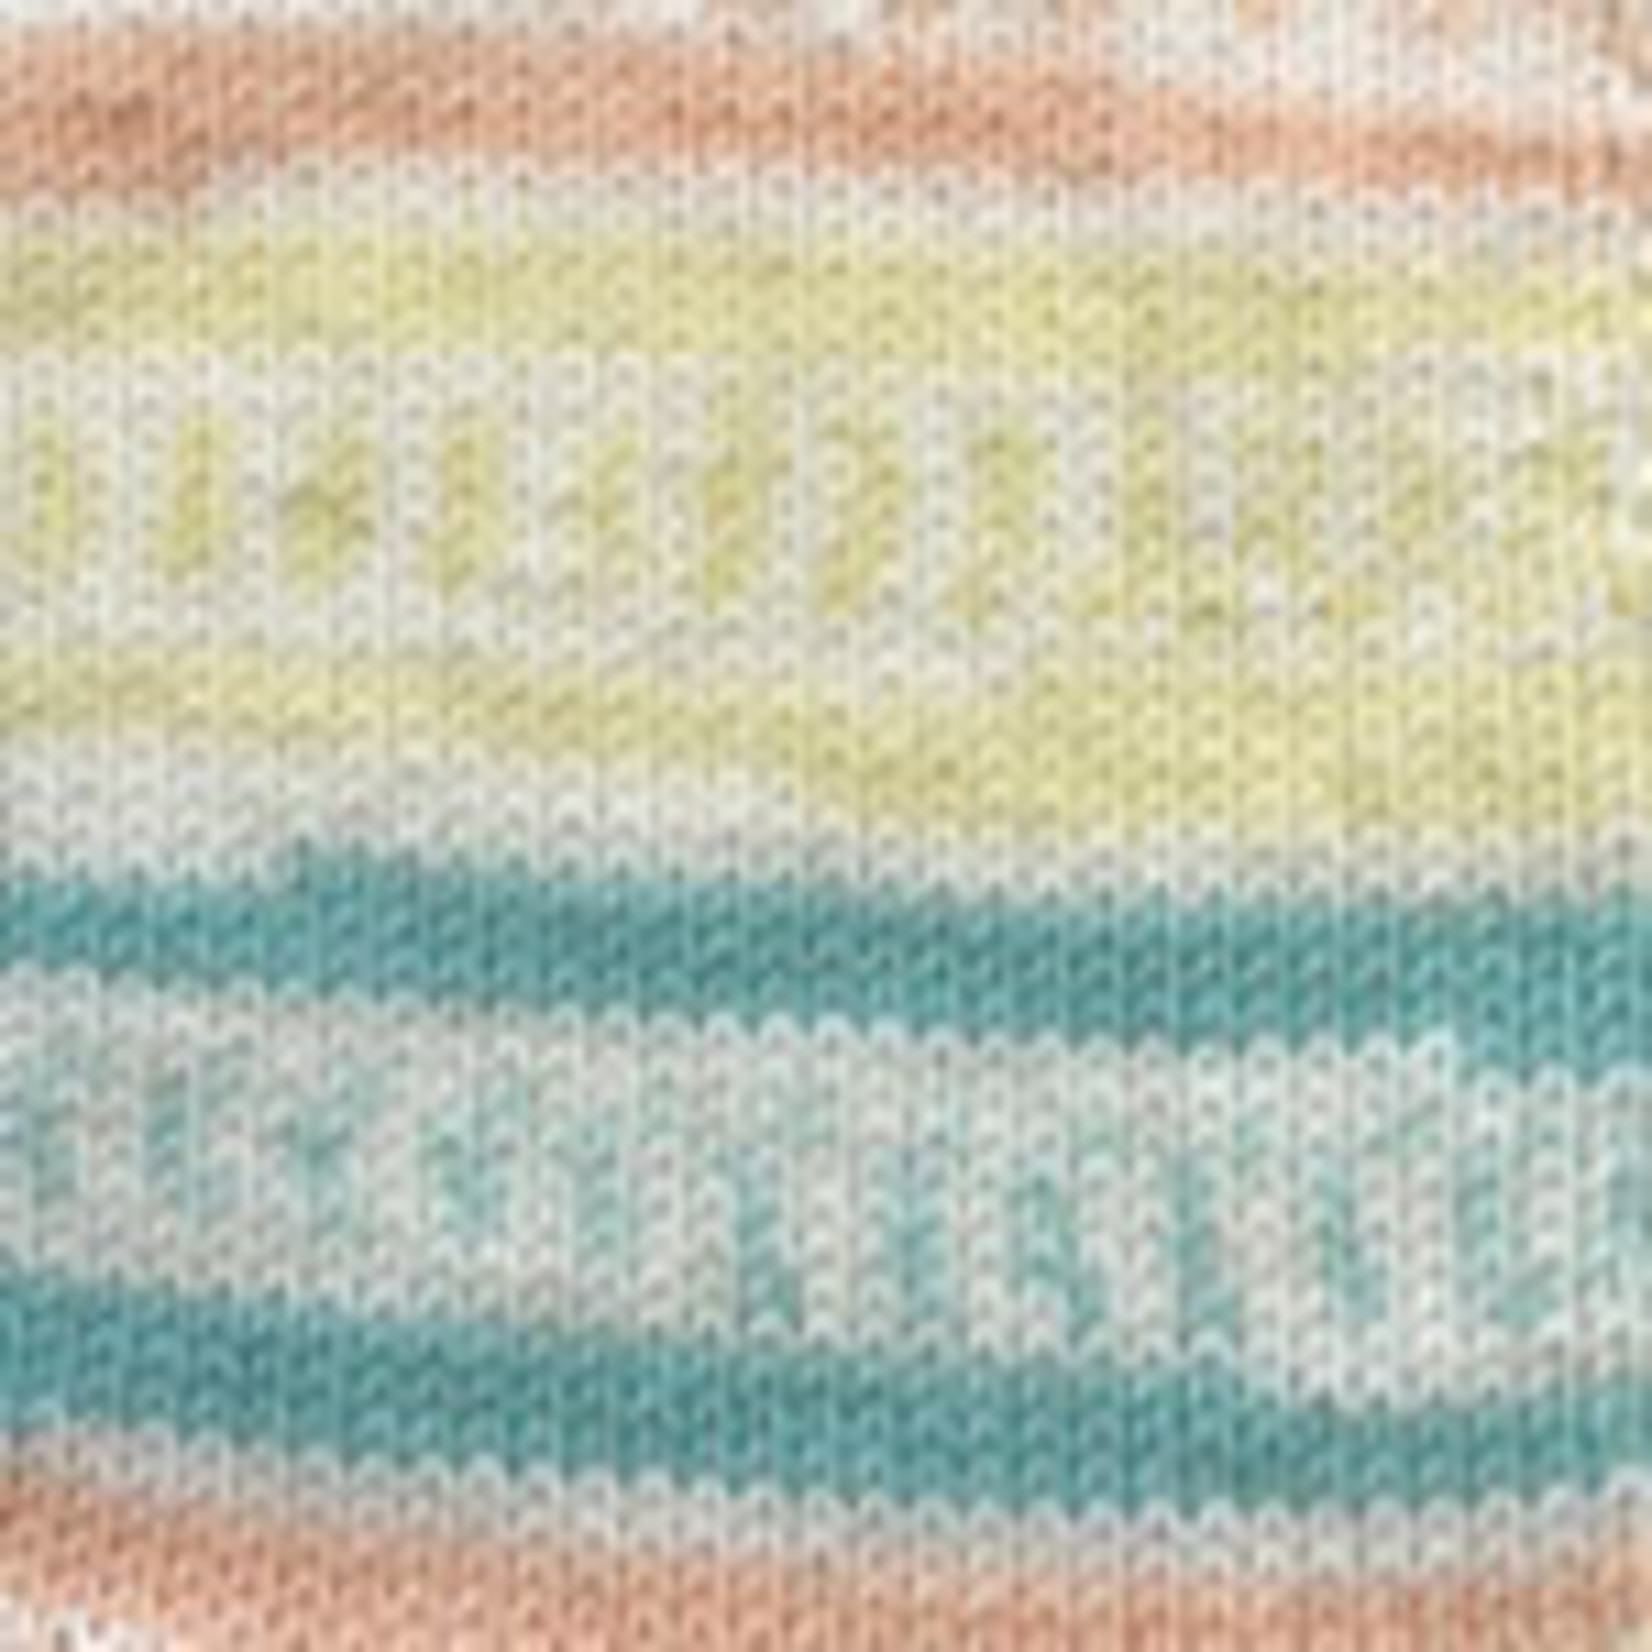 Soft Serve Yarn by Plymouth - Knit Knot & Natter